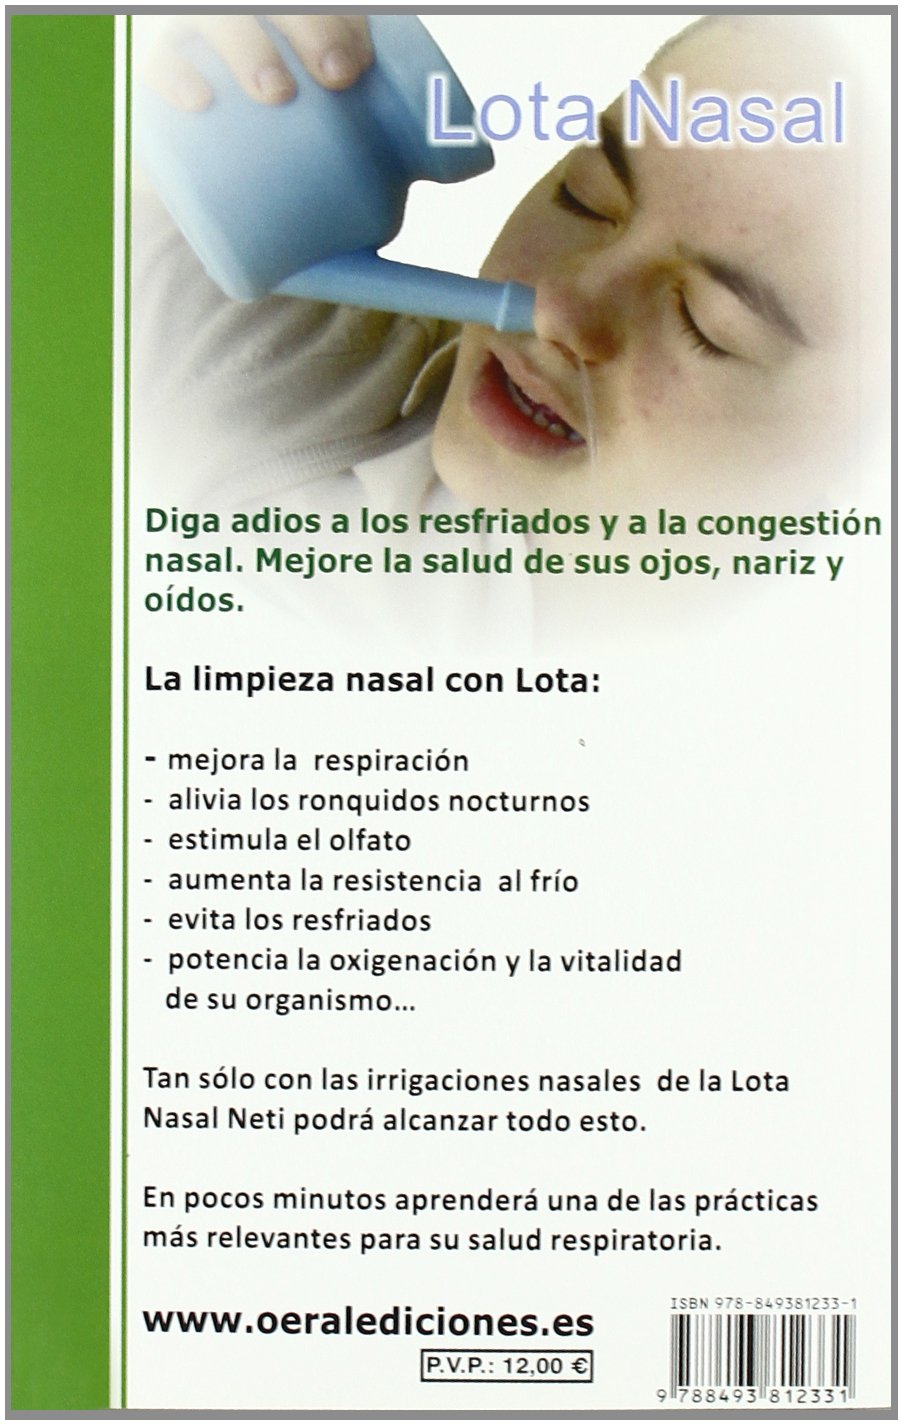 La limpieza nasal con Lota